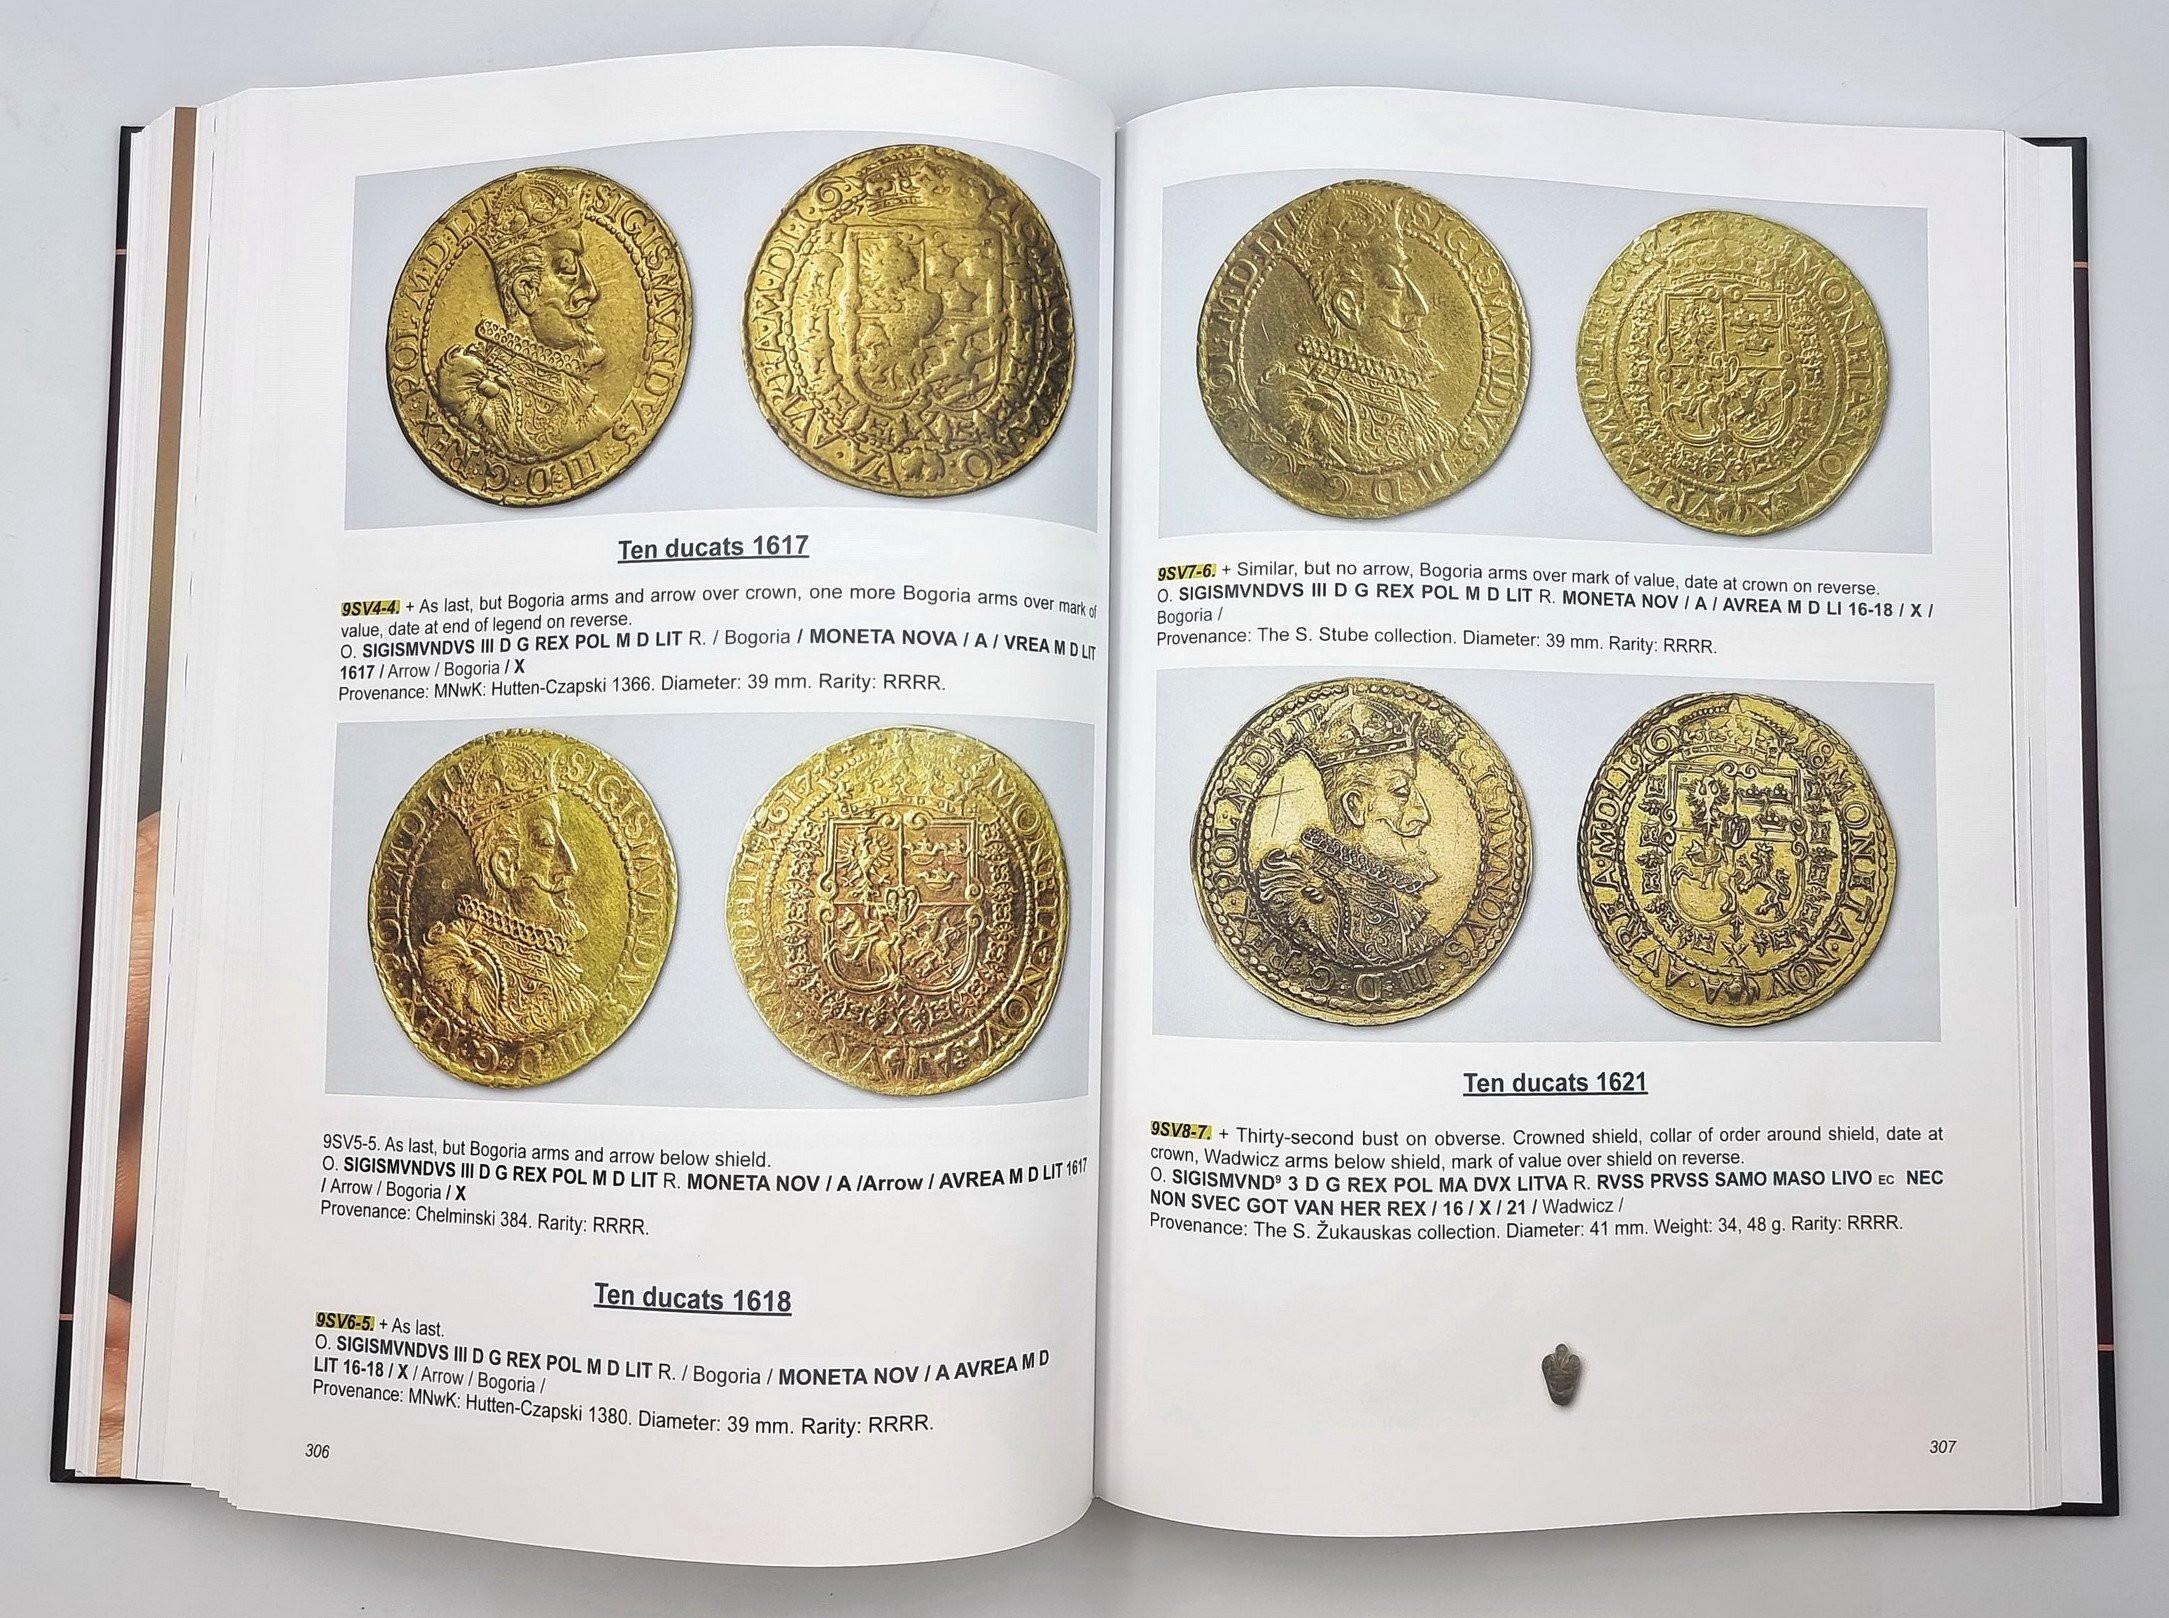 Coins of Lithuania 1386-2022 -  E. Ivanauskas - NOWOŚĆ!